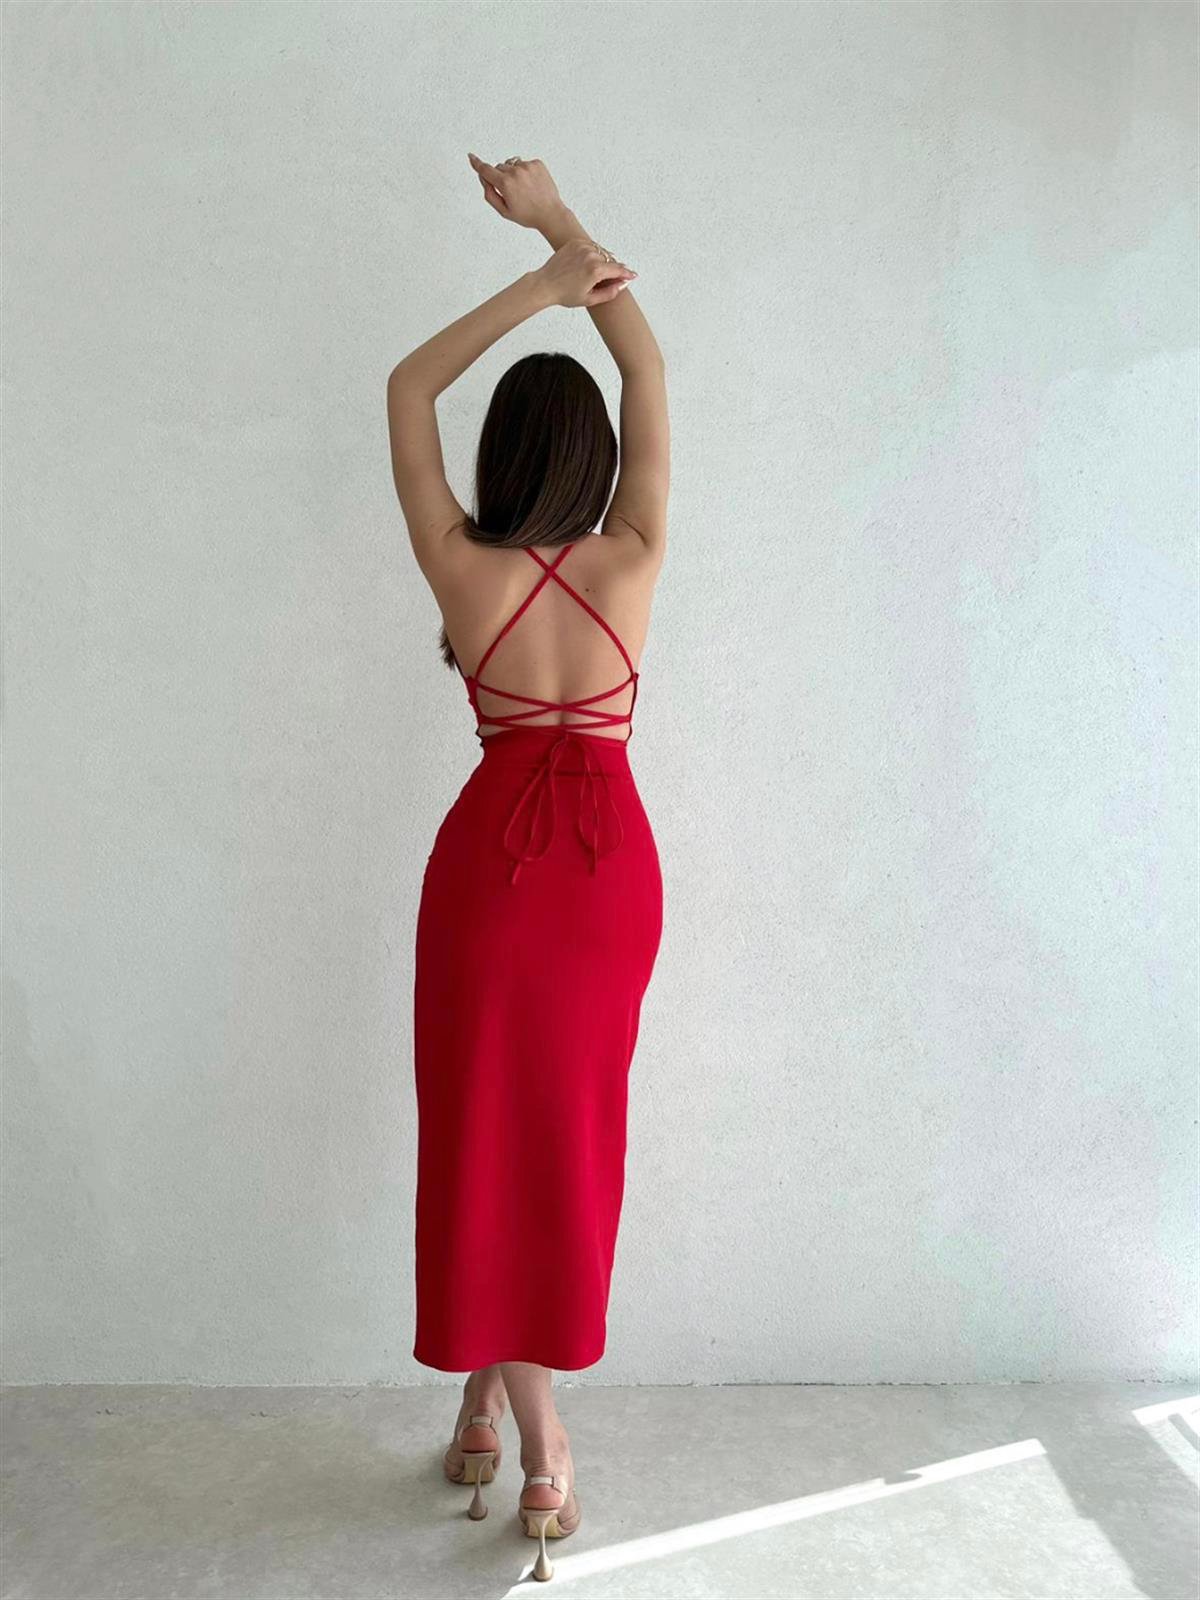 İp Askılı Sırt Dekolteli Yırtmaçlı Elbise - Kırmızı